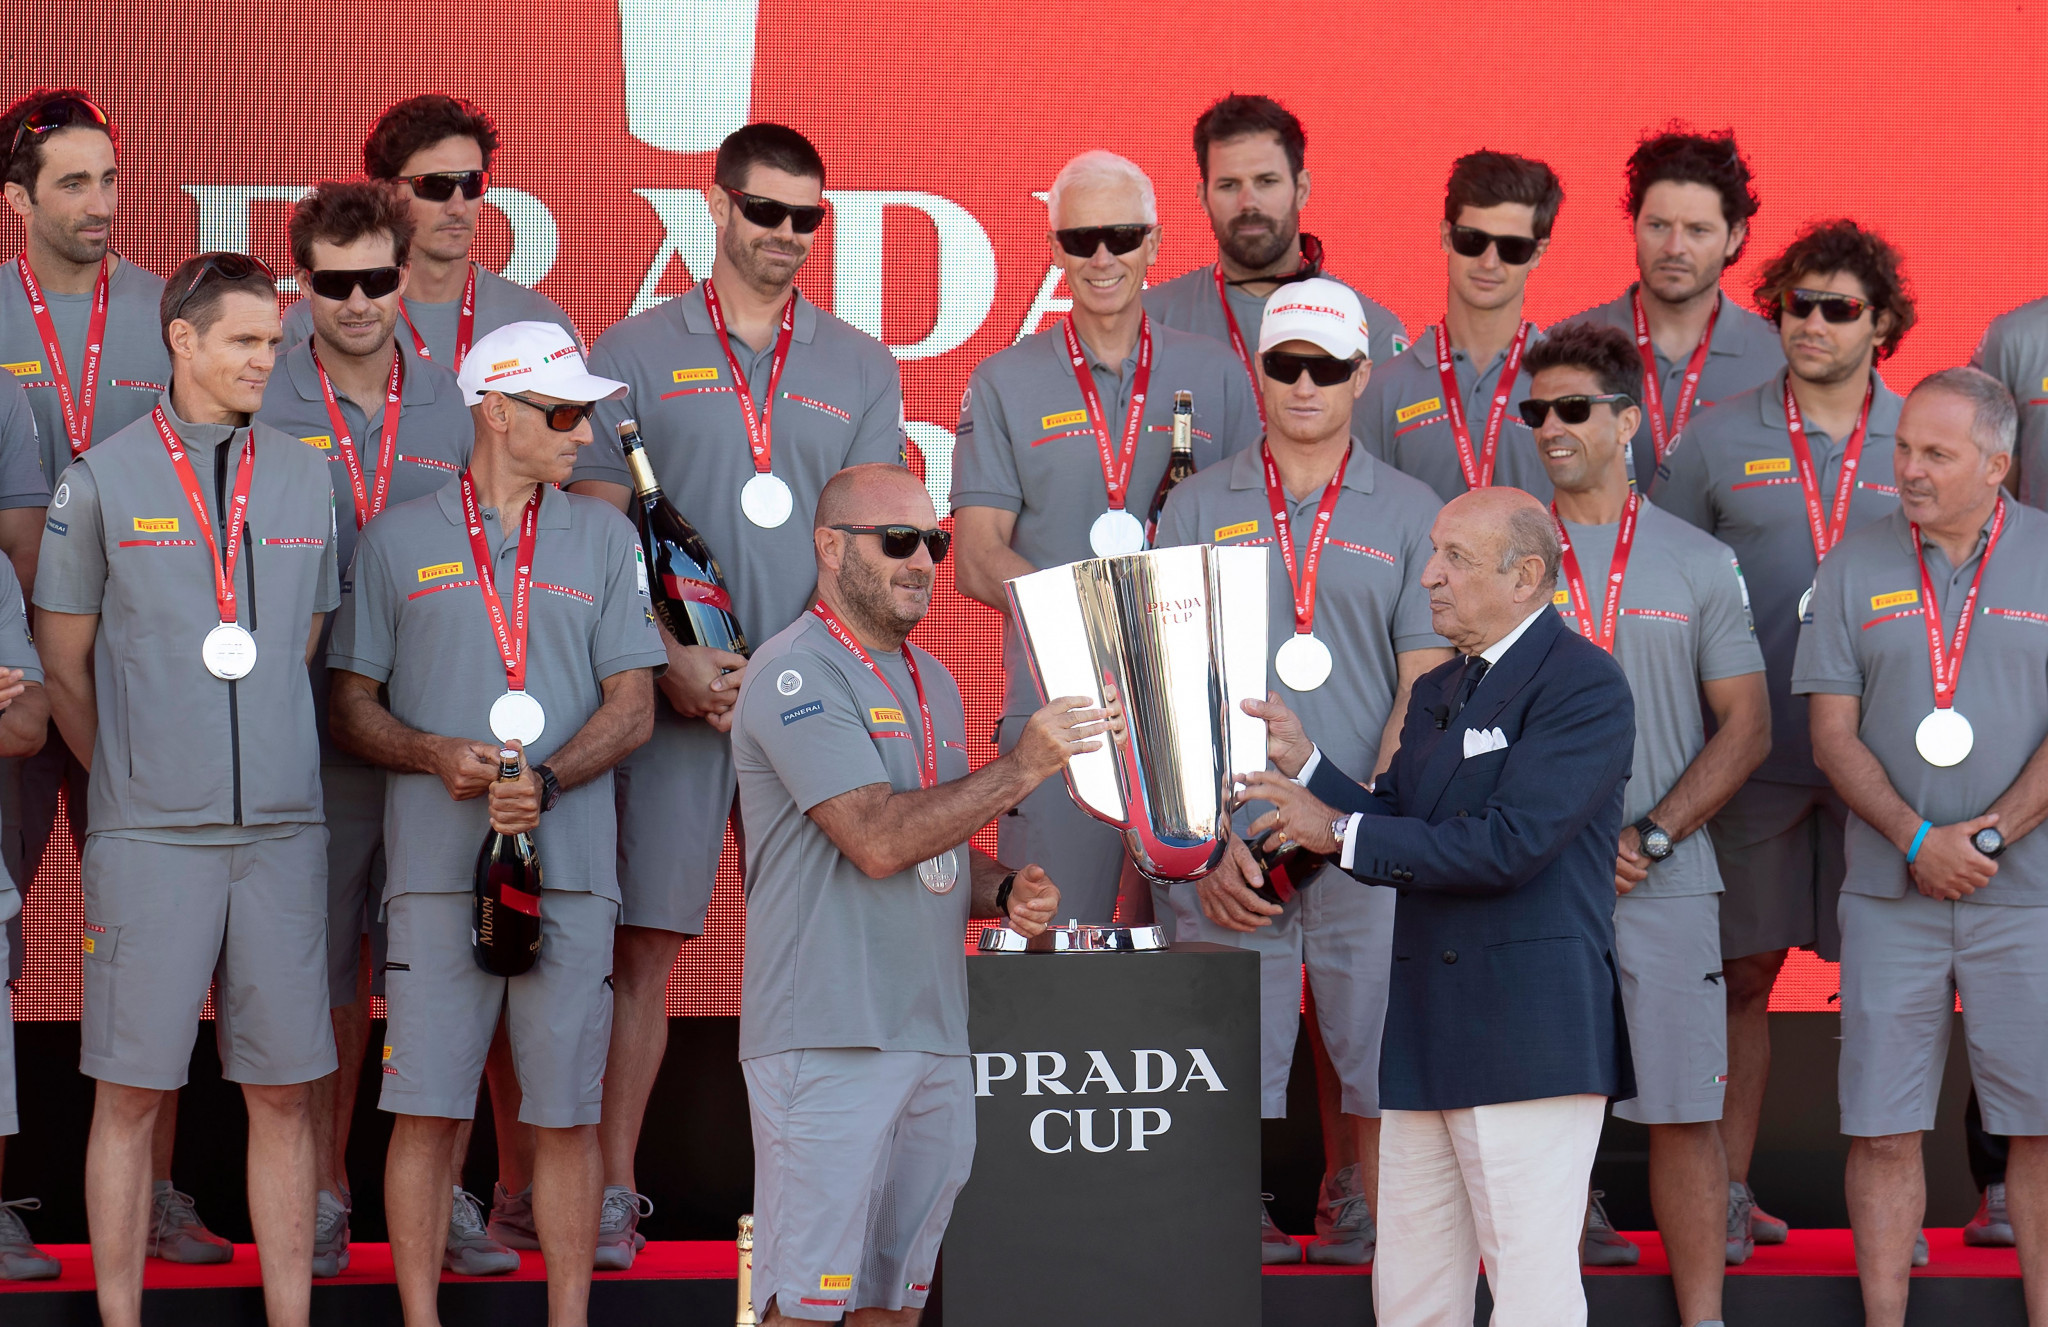 Circolo della Vela Sicilia won the Prada Cup selection race for the America's Cup ©Getty Images